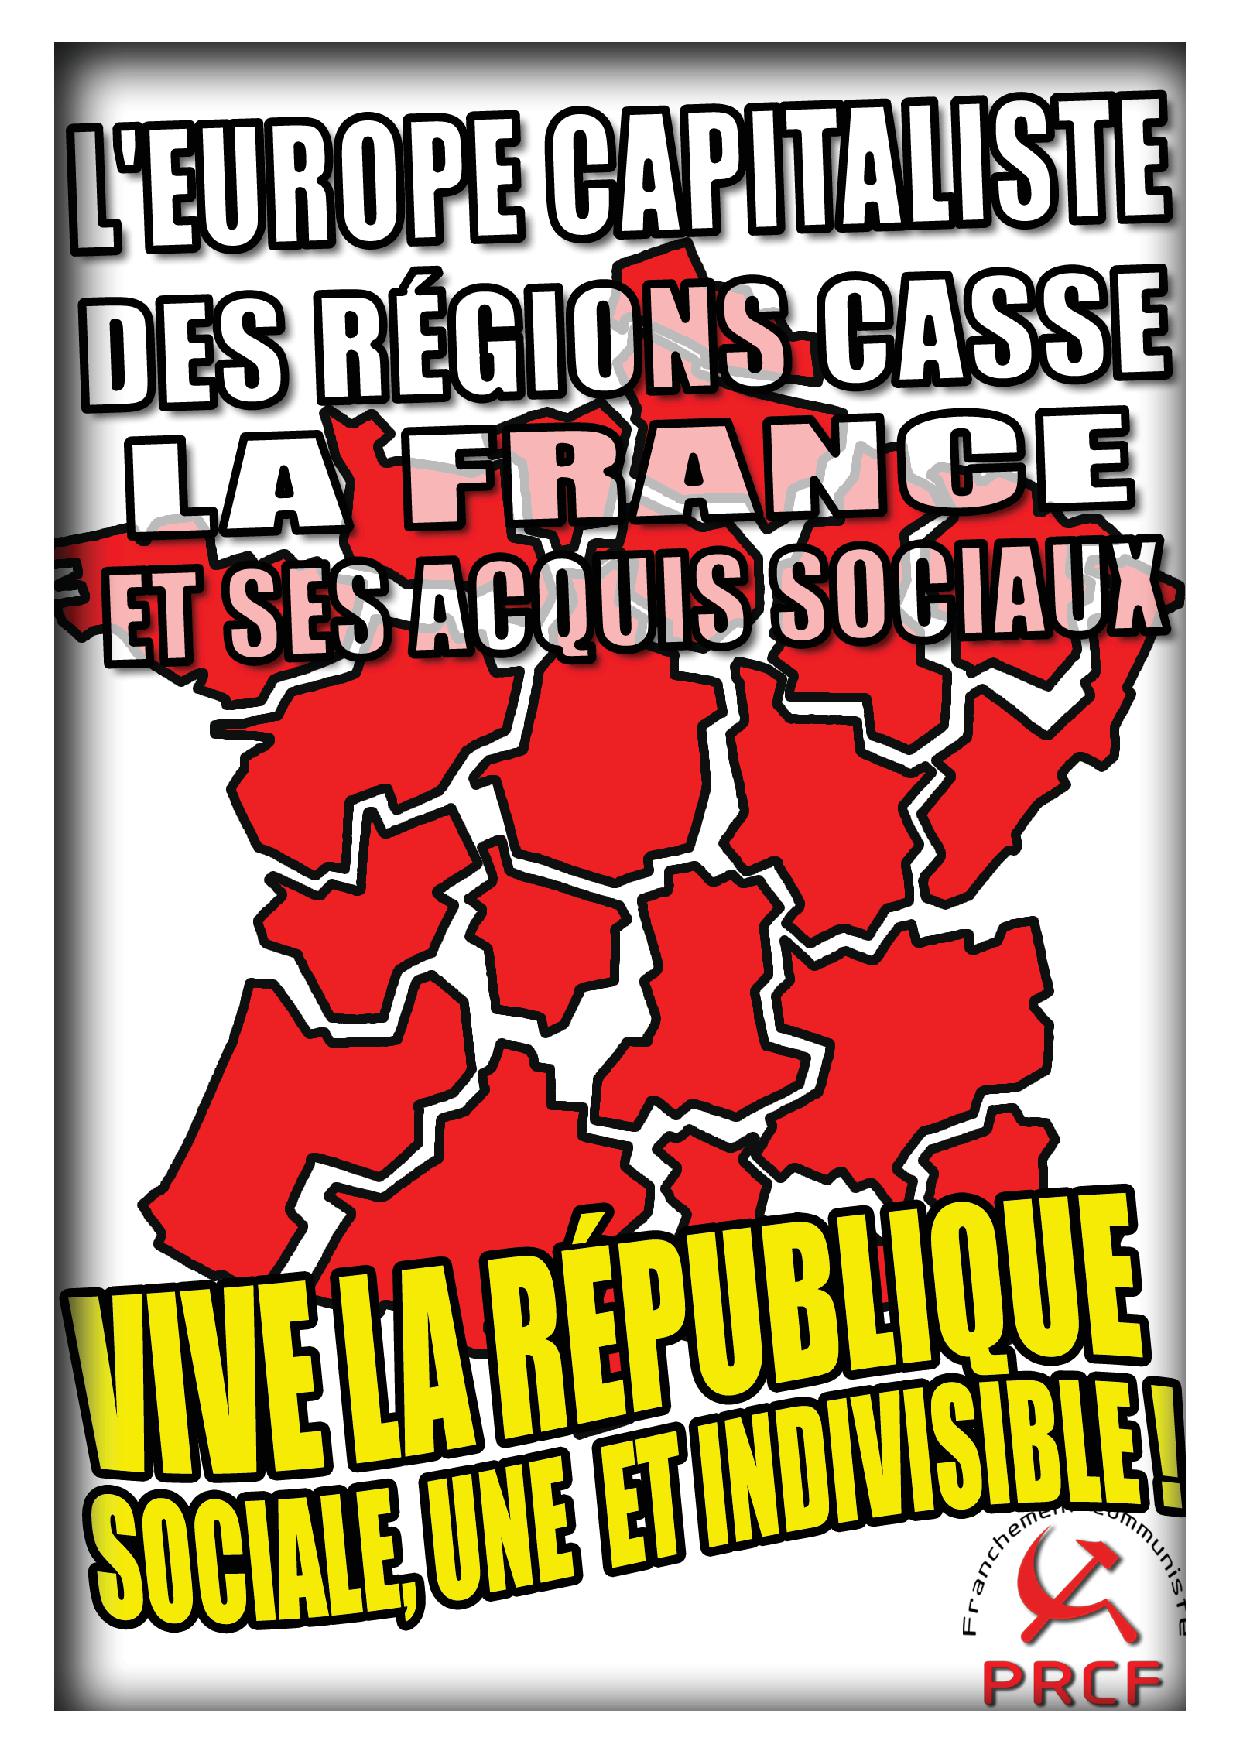 Réforme territoriale : « supprimer la France » les aveux du Figaro sur le but de la classe capitaliste